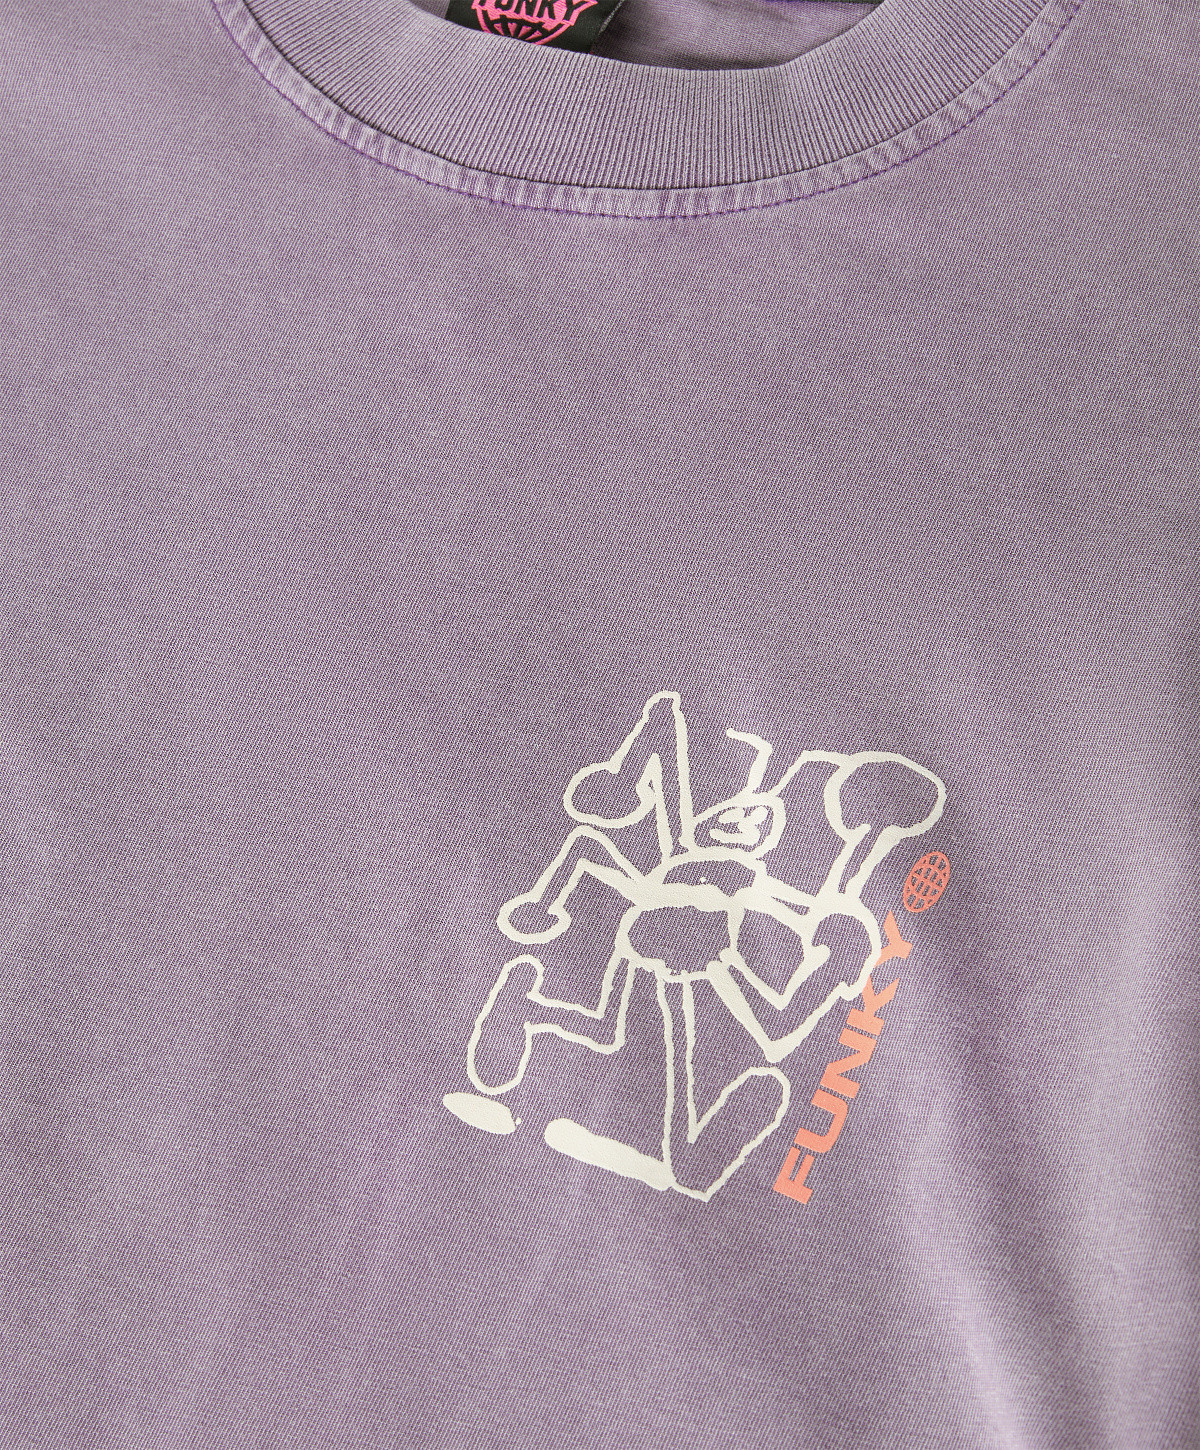 Funky - Maglia girocollo con stampa effetto lavato, Viola lilla, large image number 2